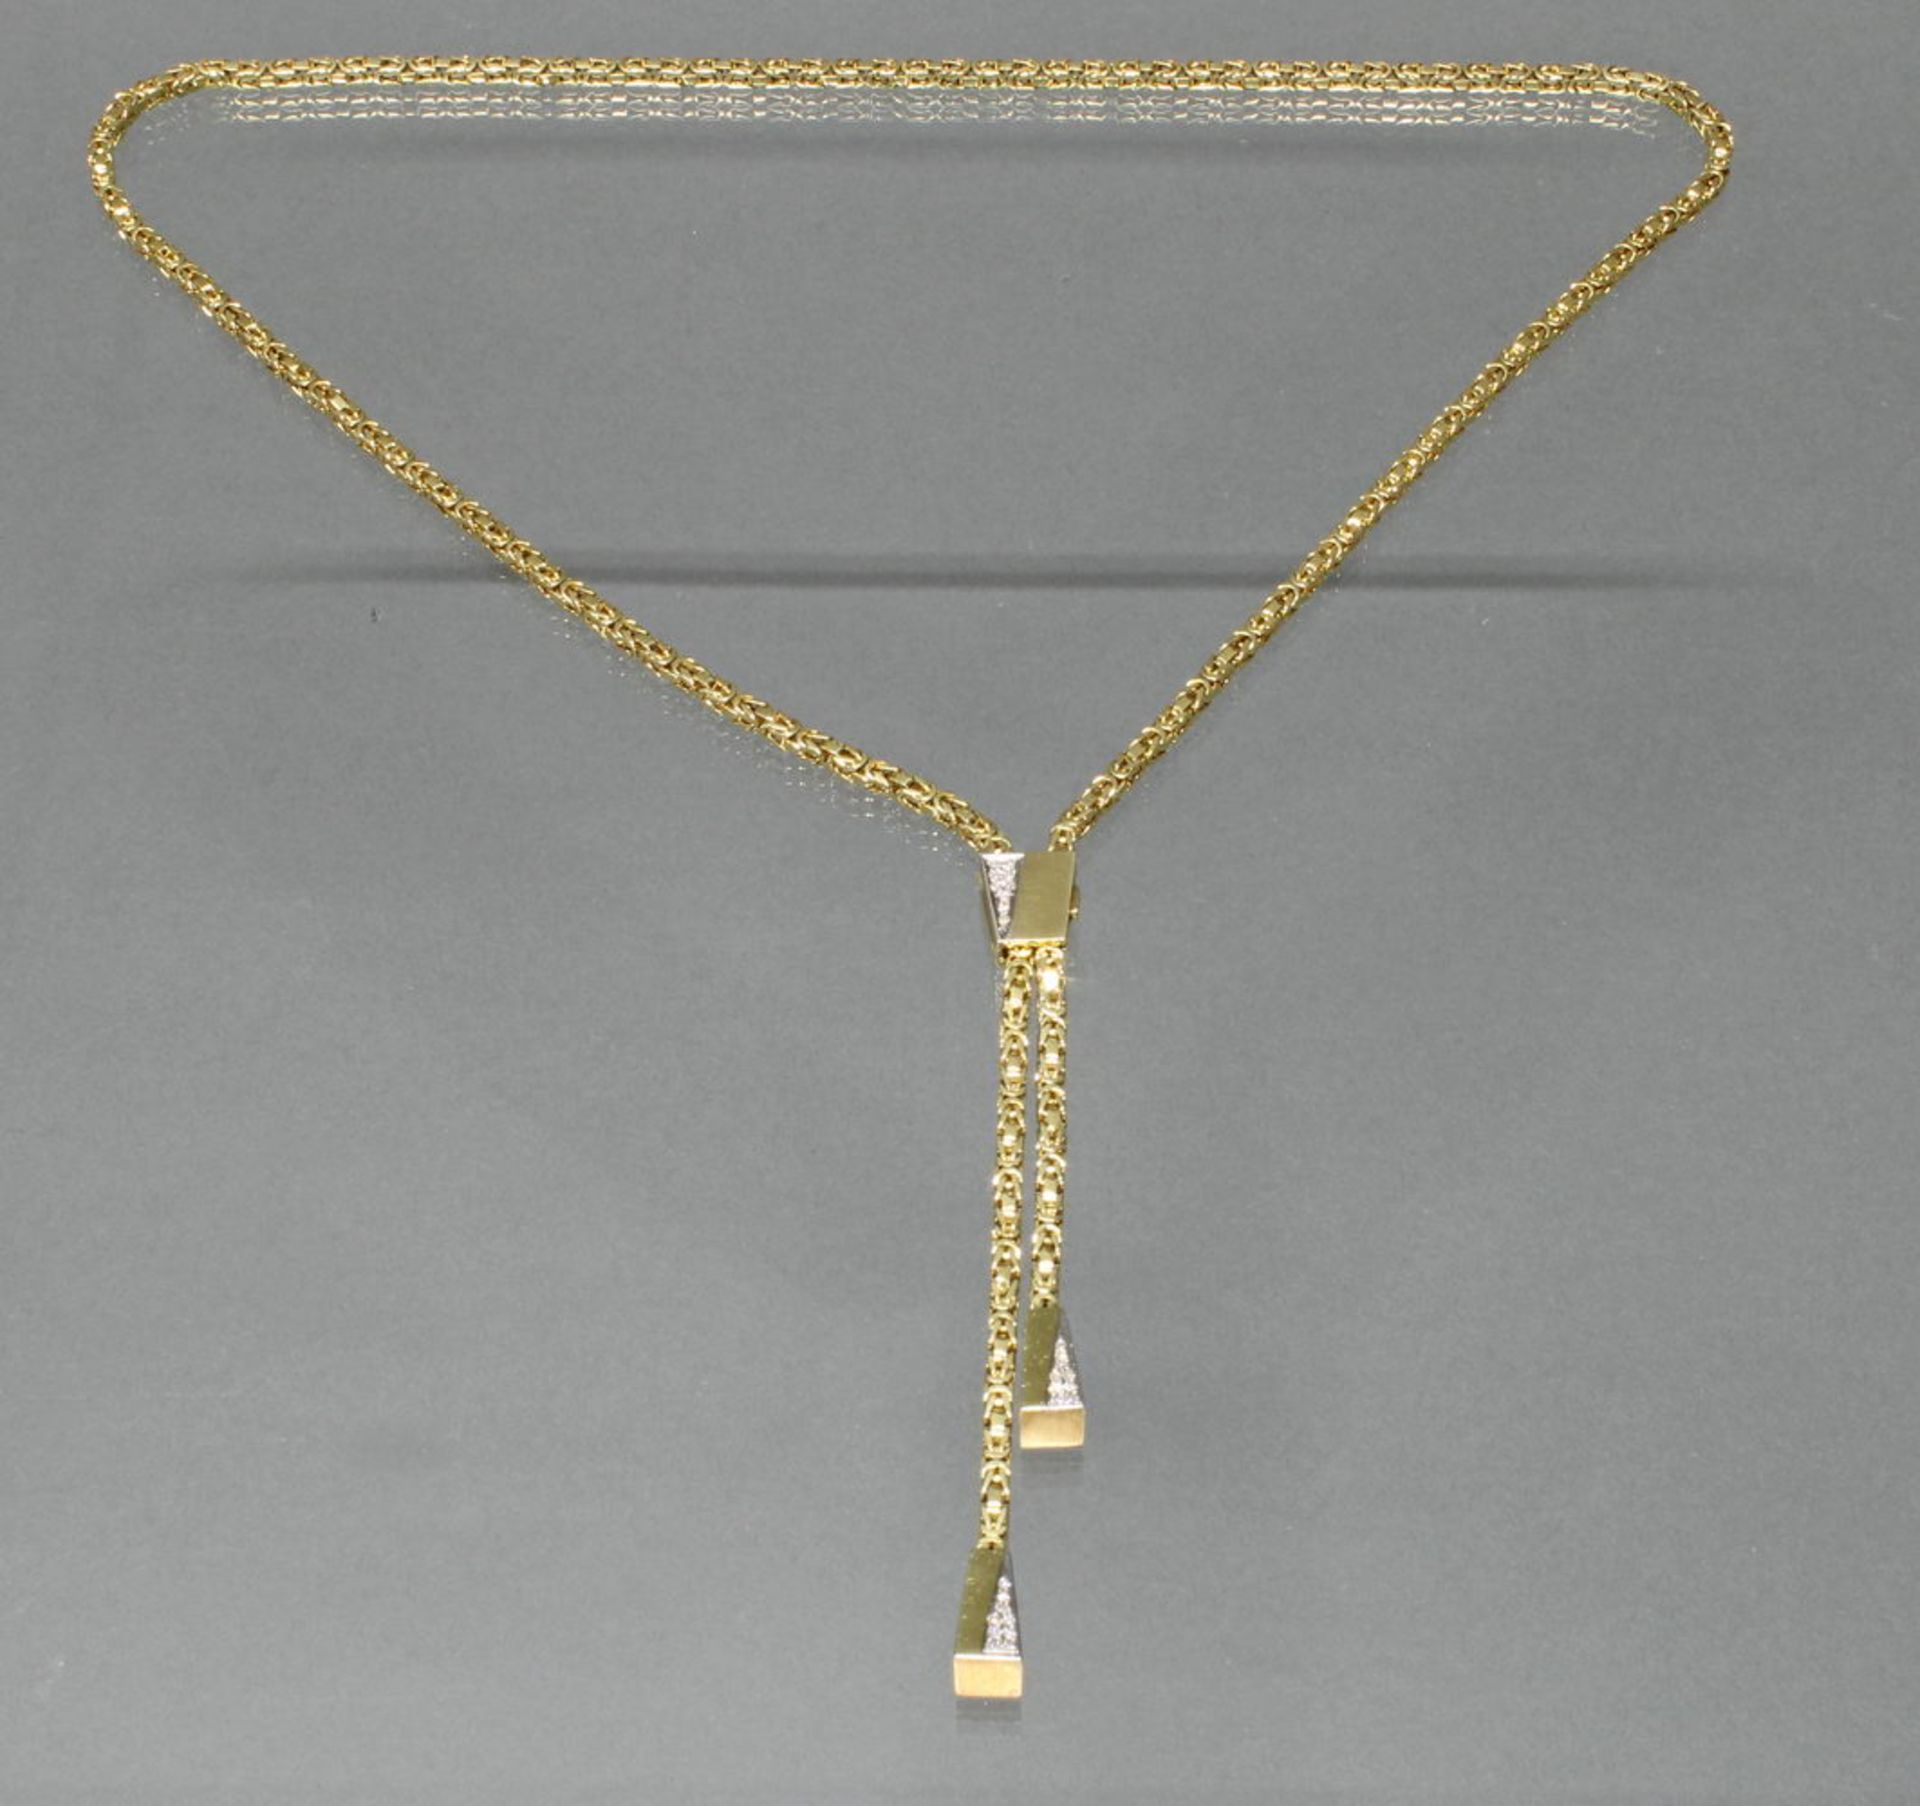 Y-Collier/Königskette, mit Verstellclip, WG/GG 585, 27 Diamanten zus. ca. 0.25 ct., alle etwa fw/s